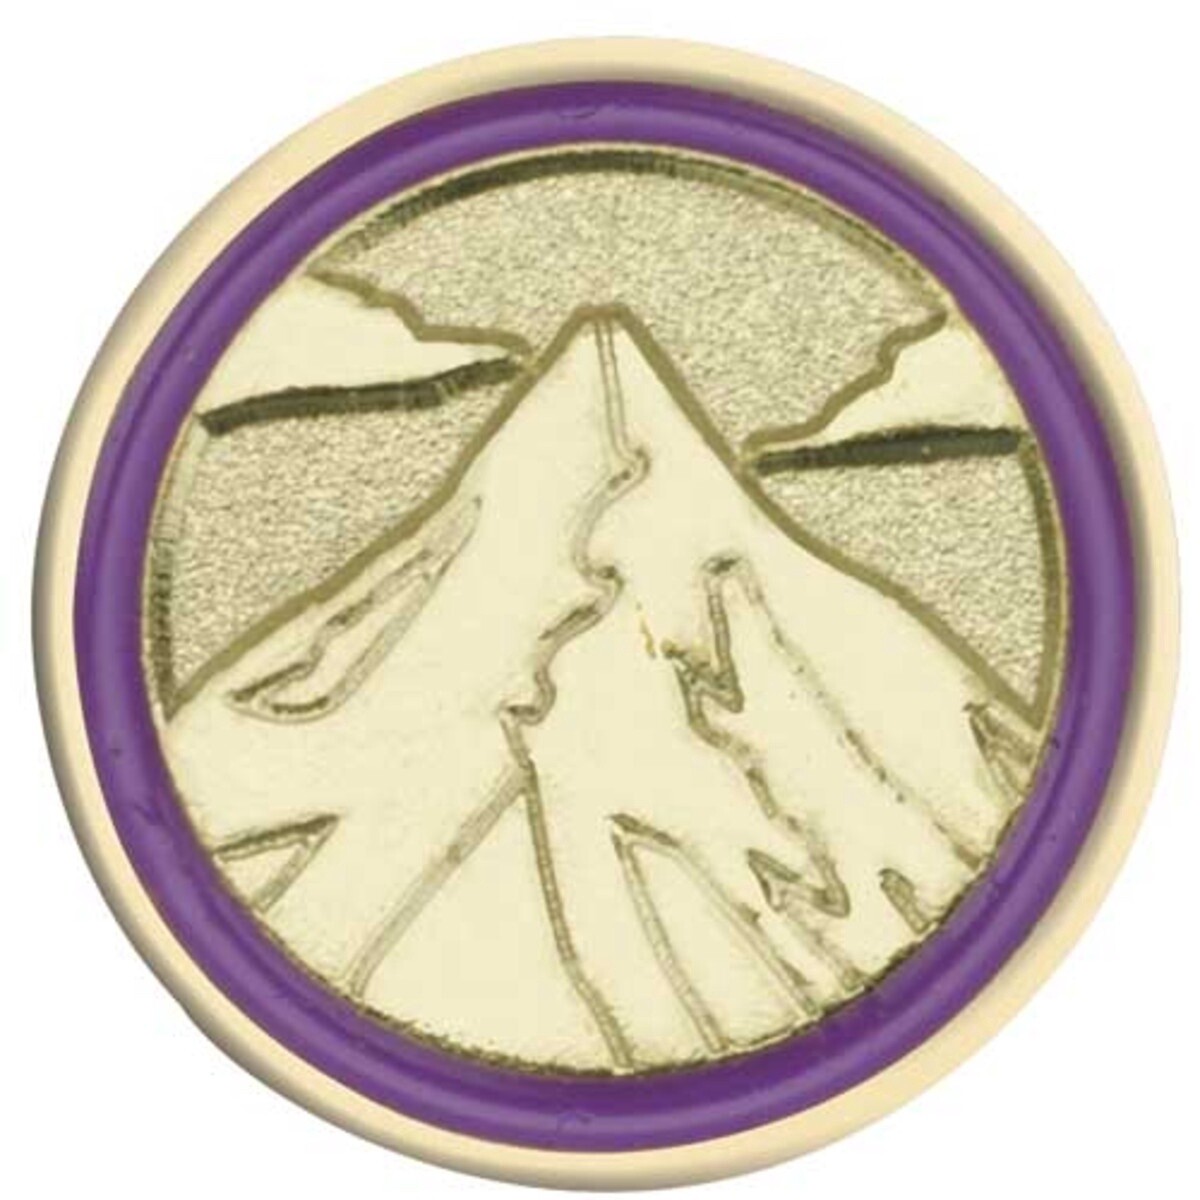 Junior Journey Summit Award Pin